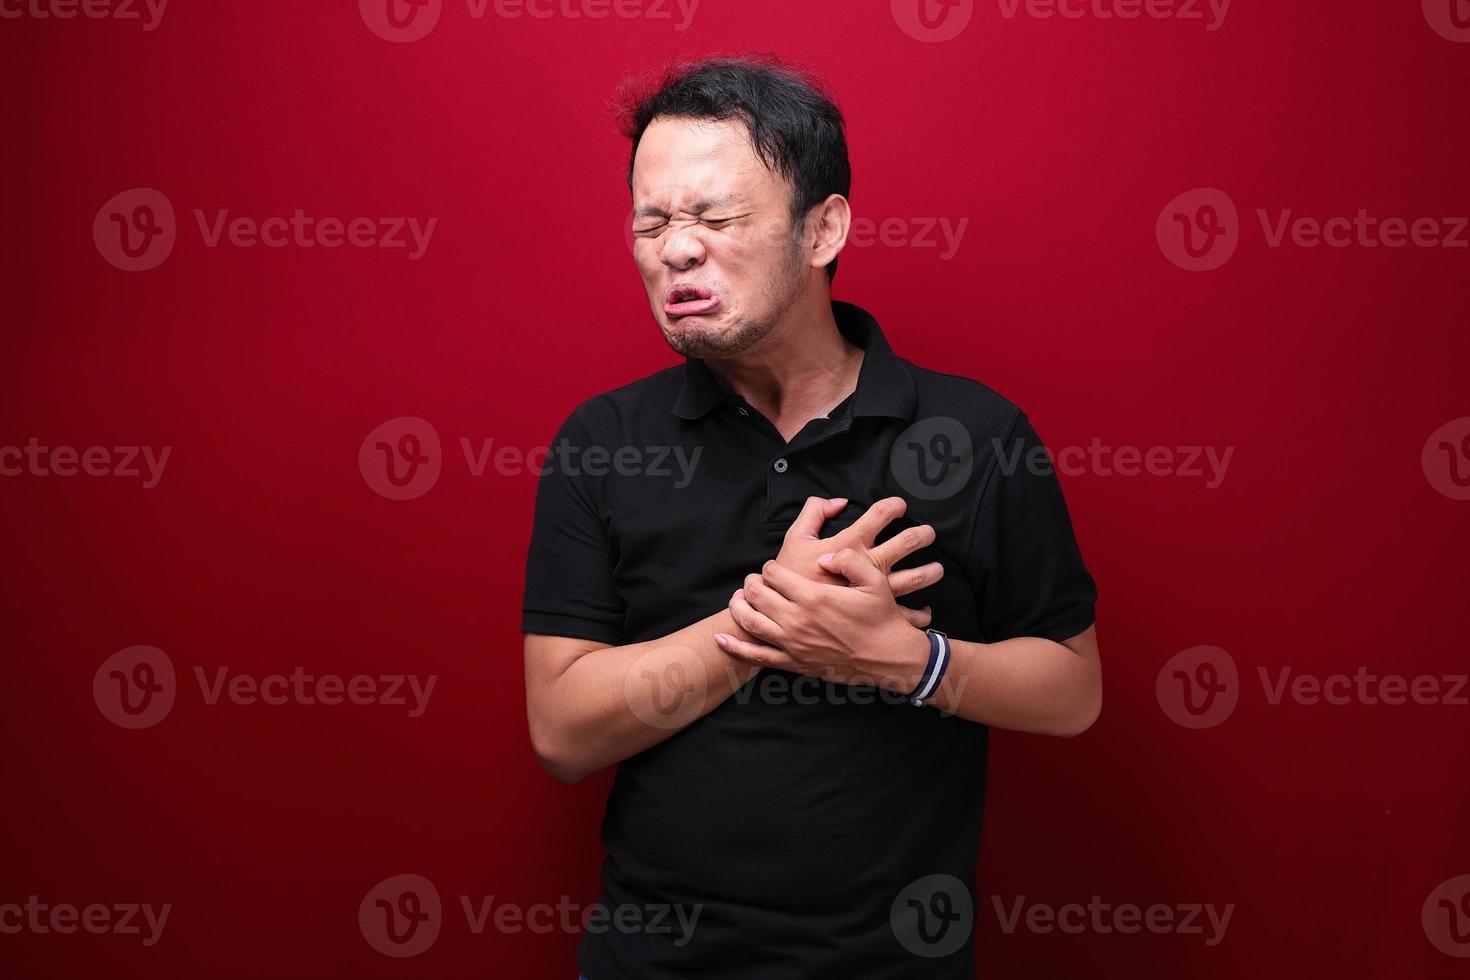 crise cardiaque ou cœur brisé d'un jeune homme asiatique avec une émotion blessée porter une chemise noire. photo